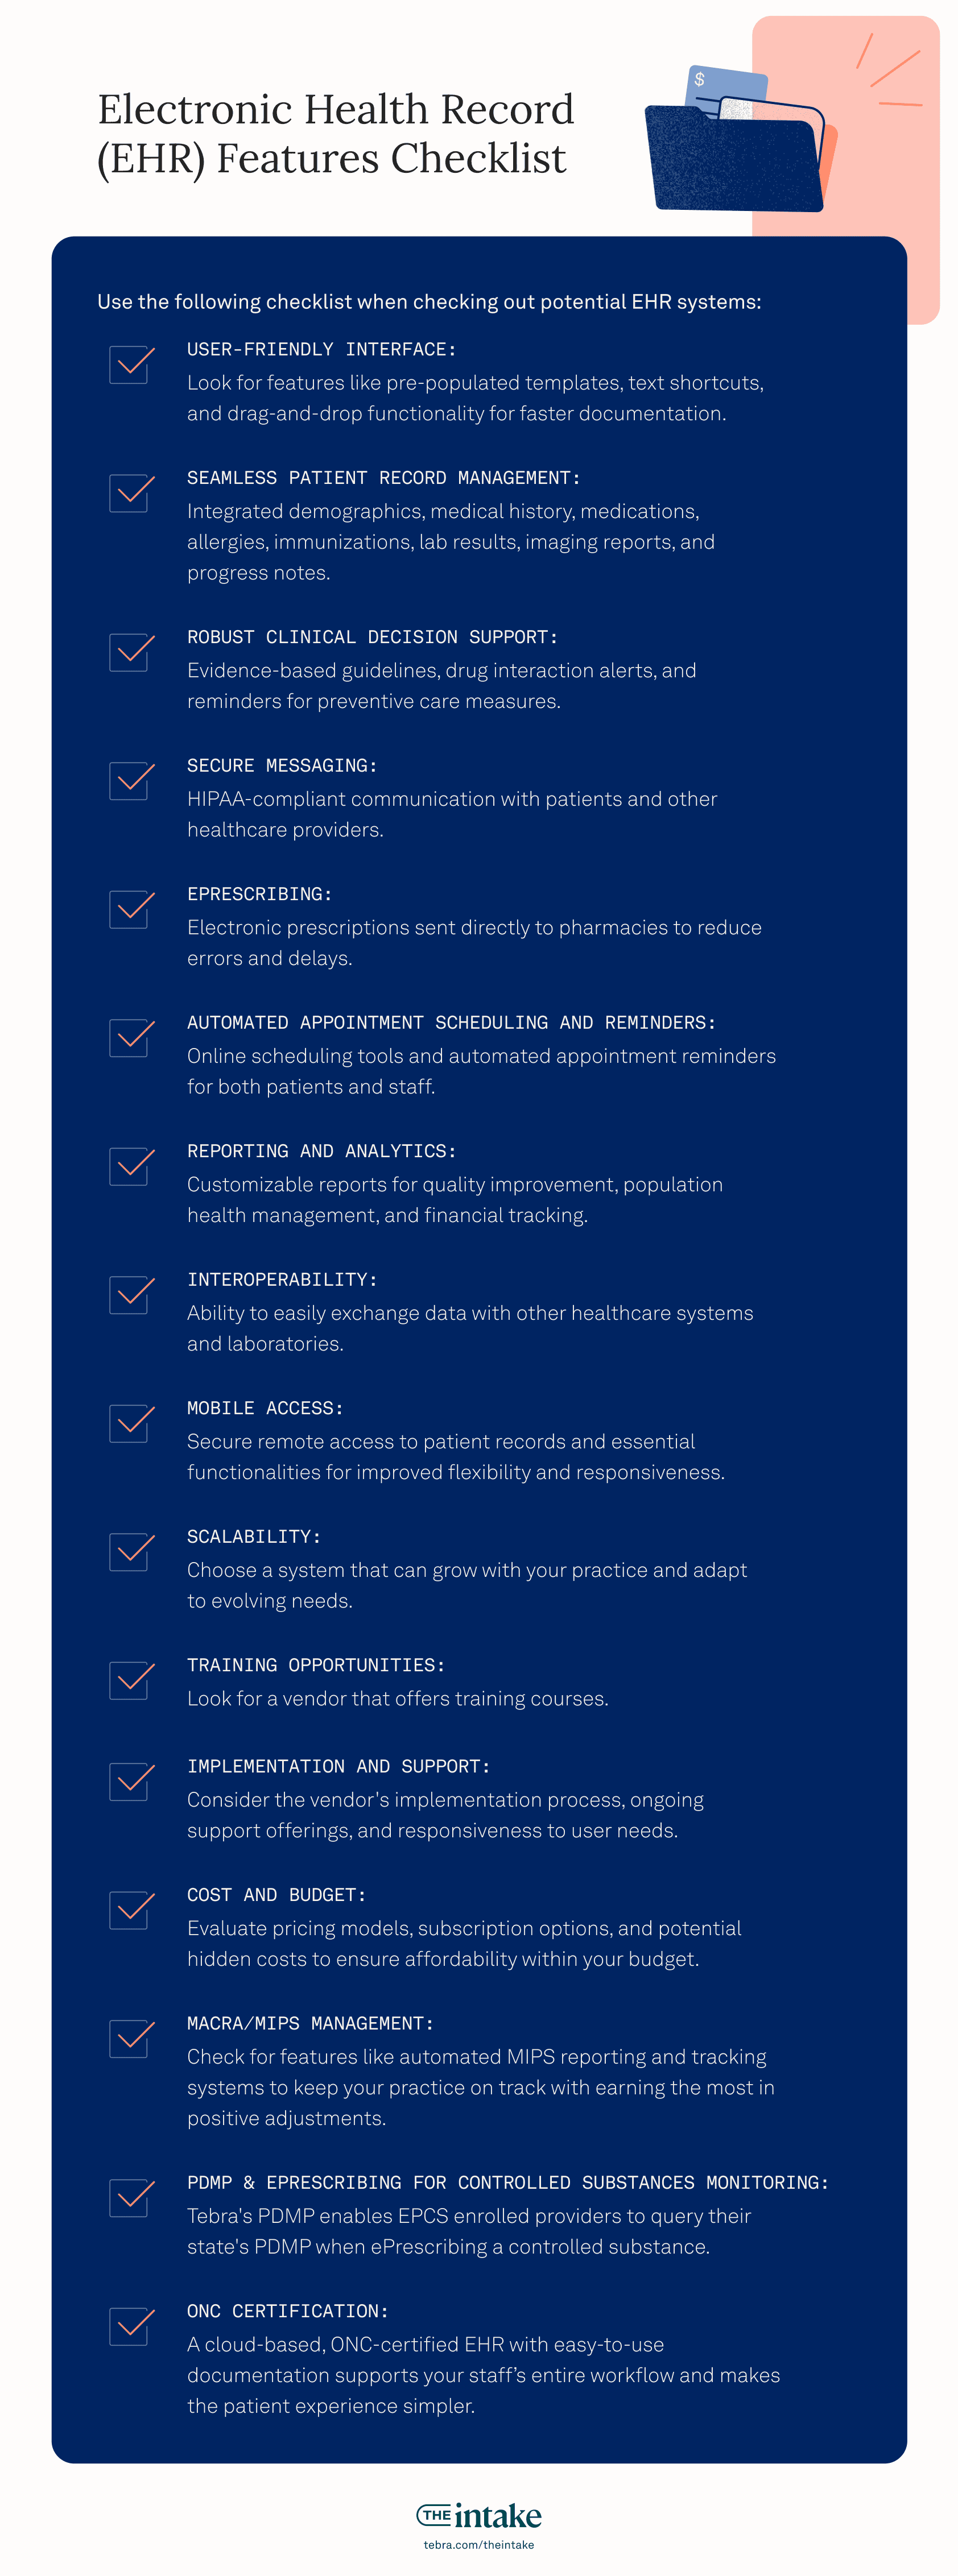 EHR features checklist